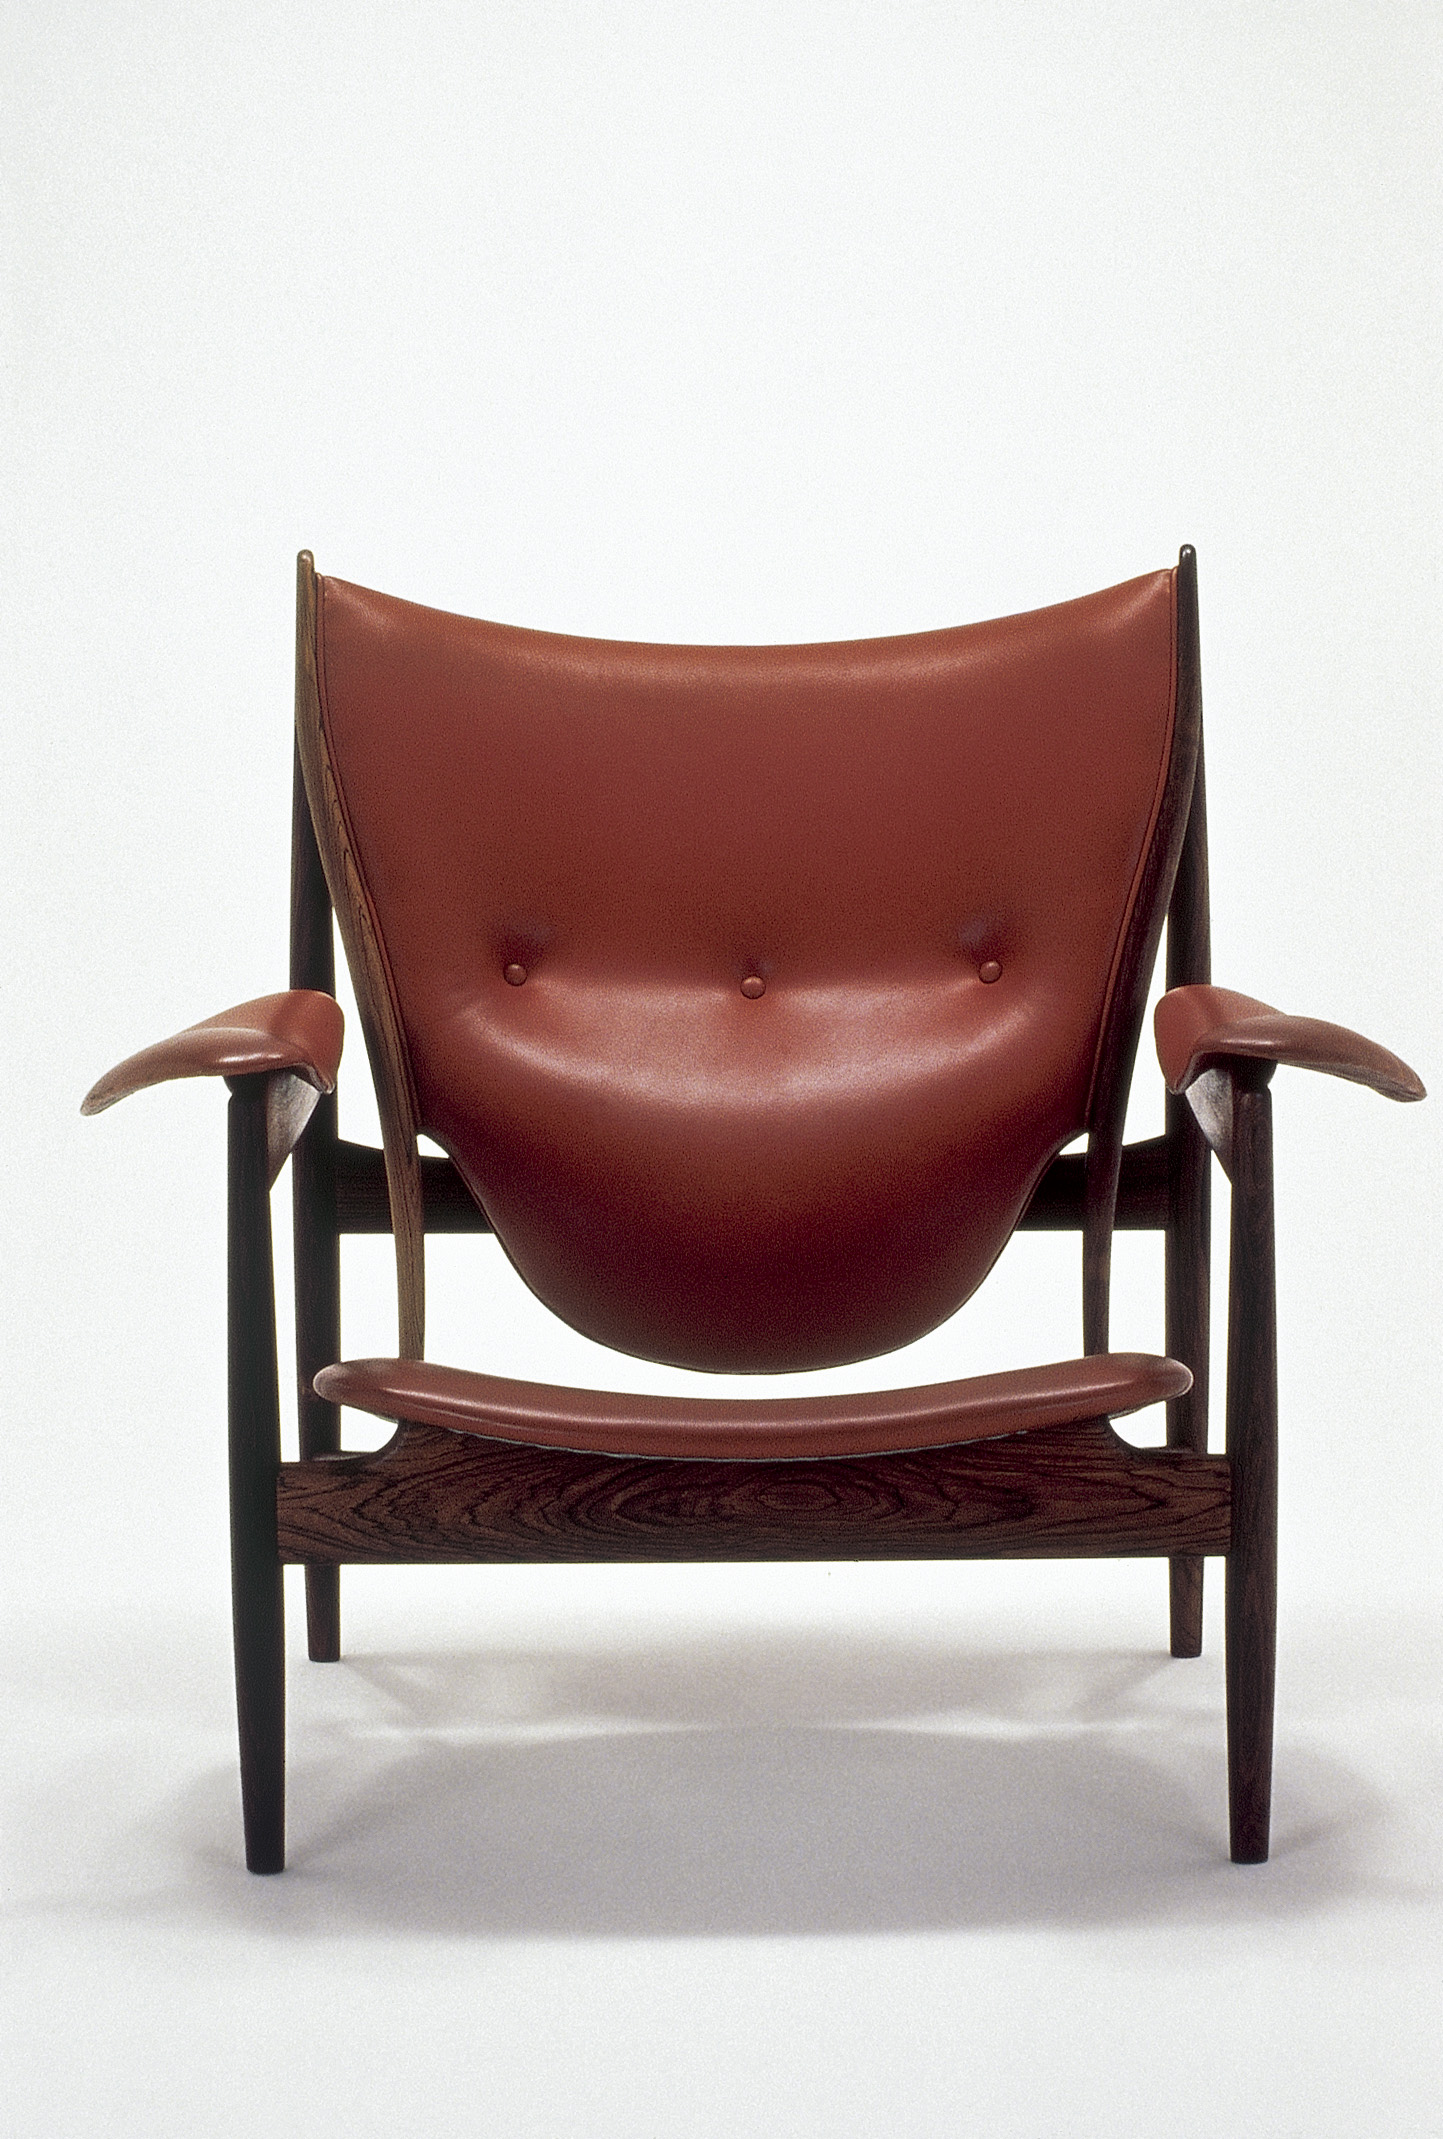 家具の彫刻家
フィン・ユール展の画像イメージ